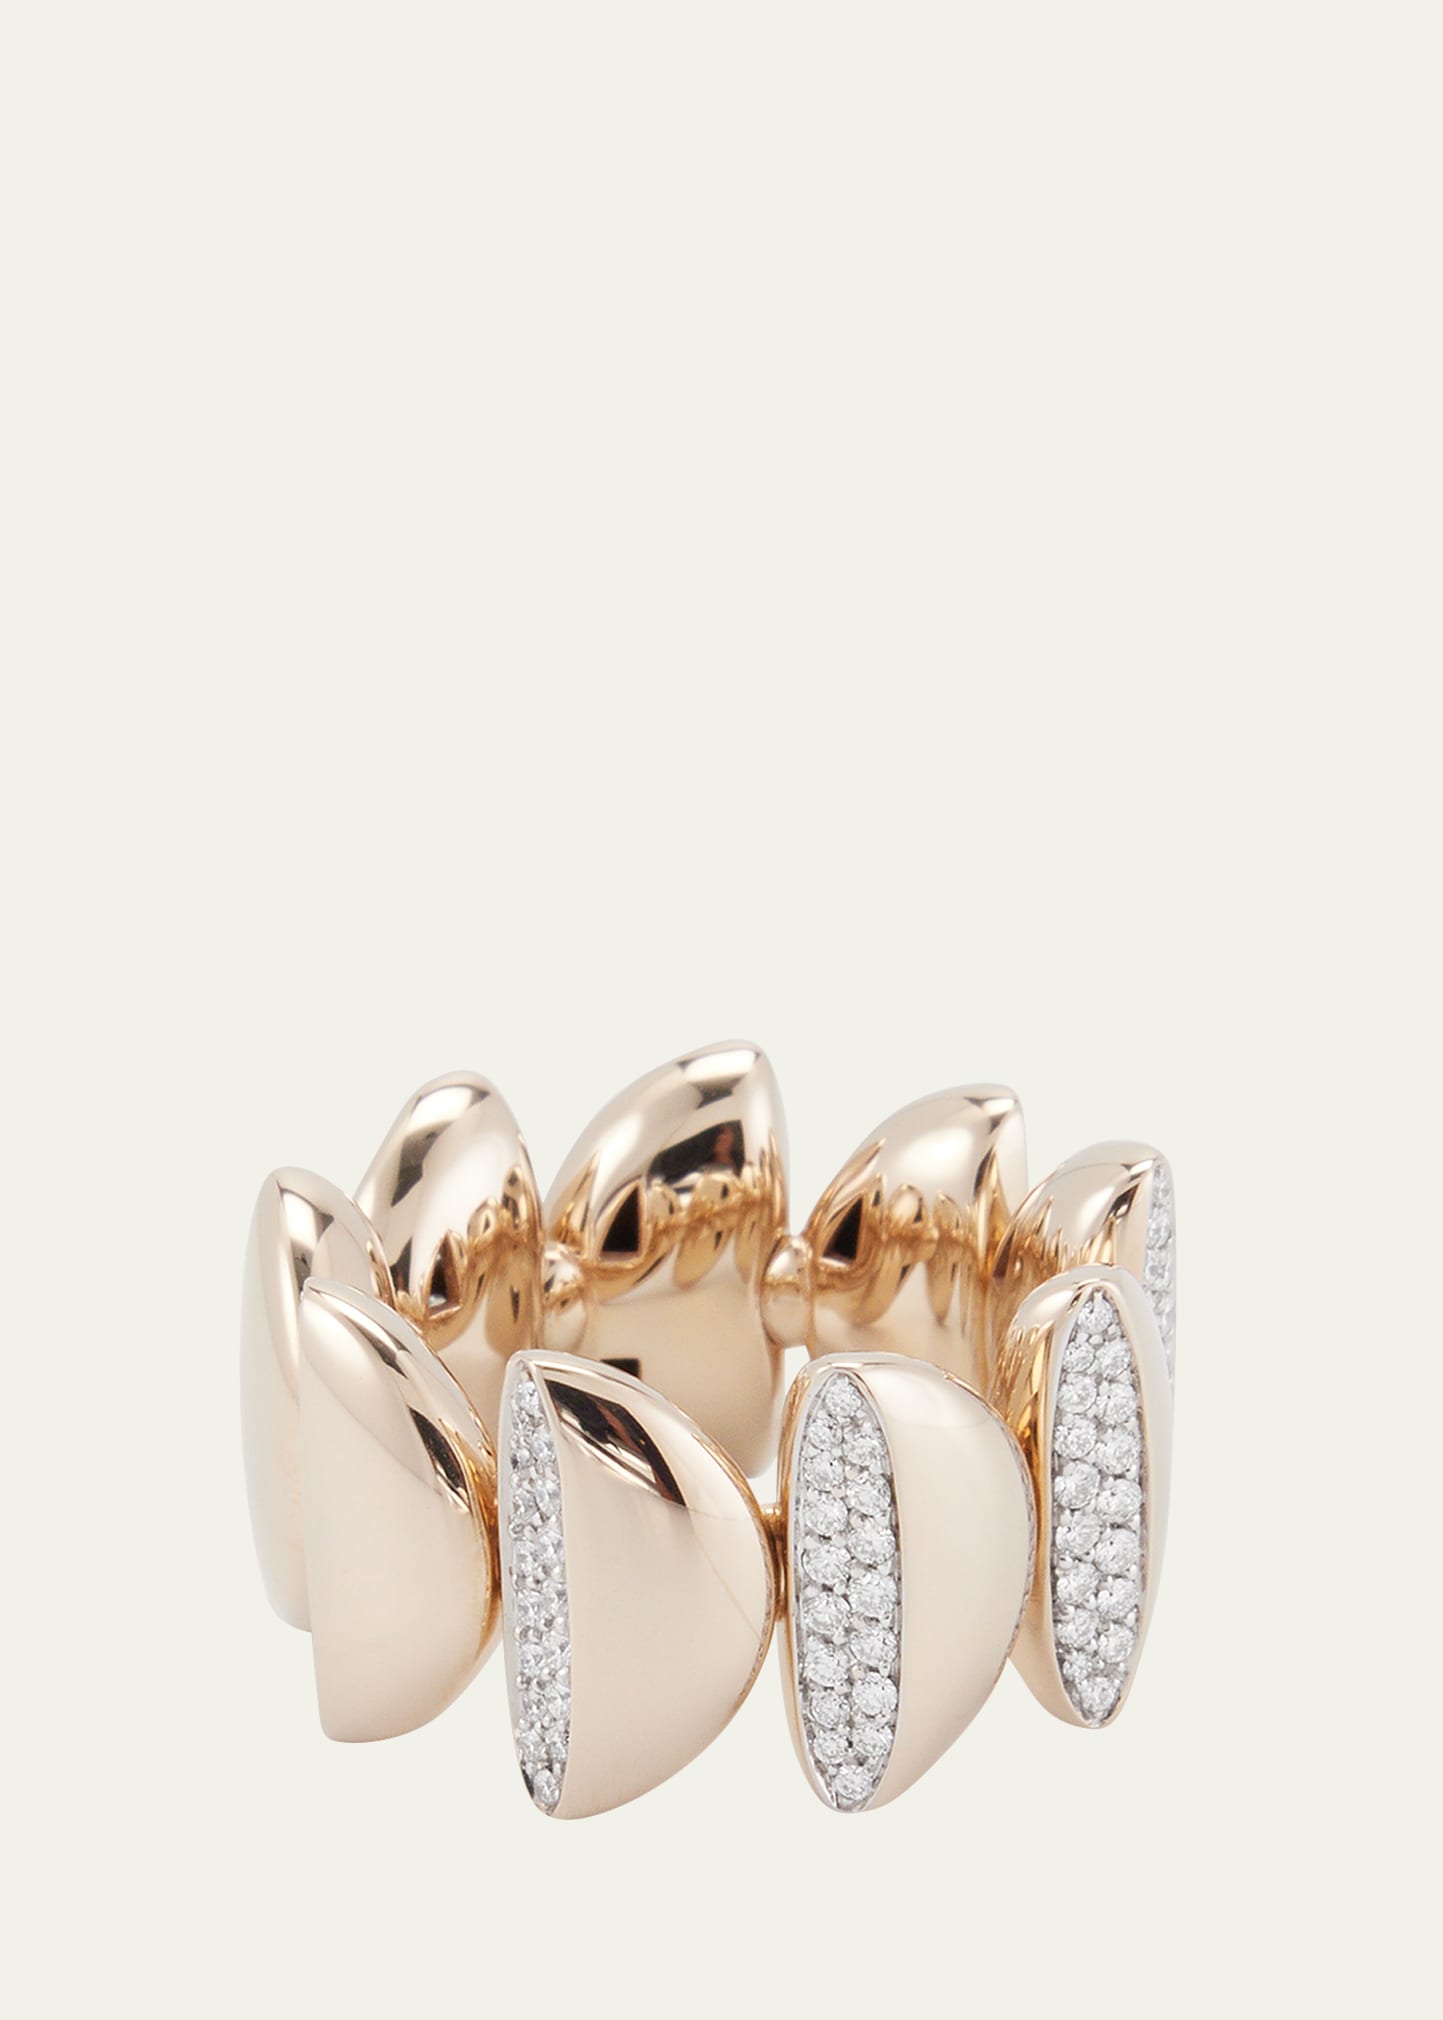 Vhernier 18k White Gold Eclisse Endless Diamond Ring In Neutral